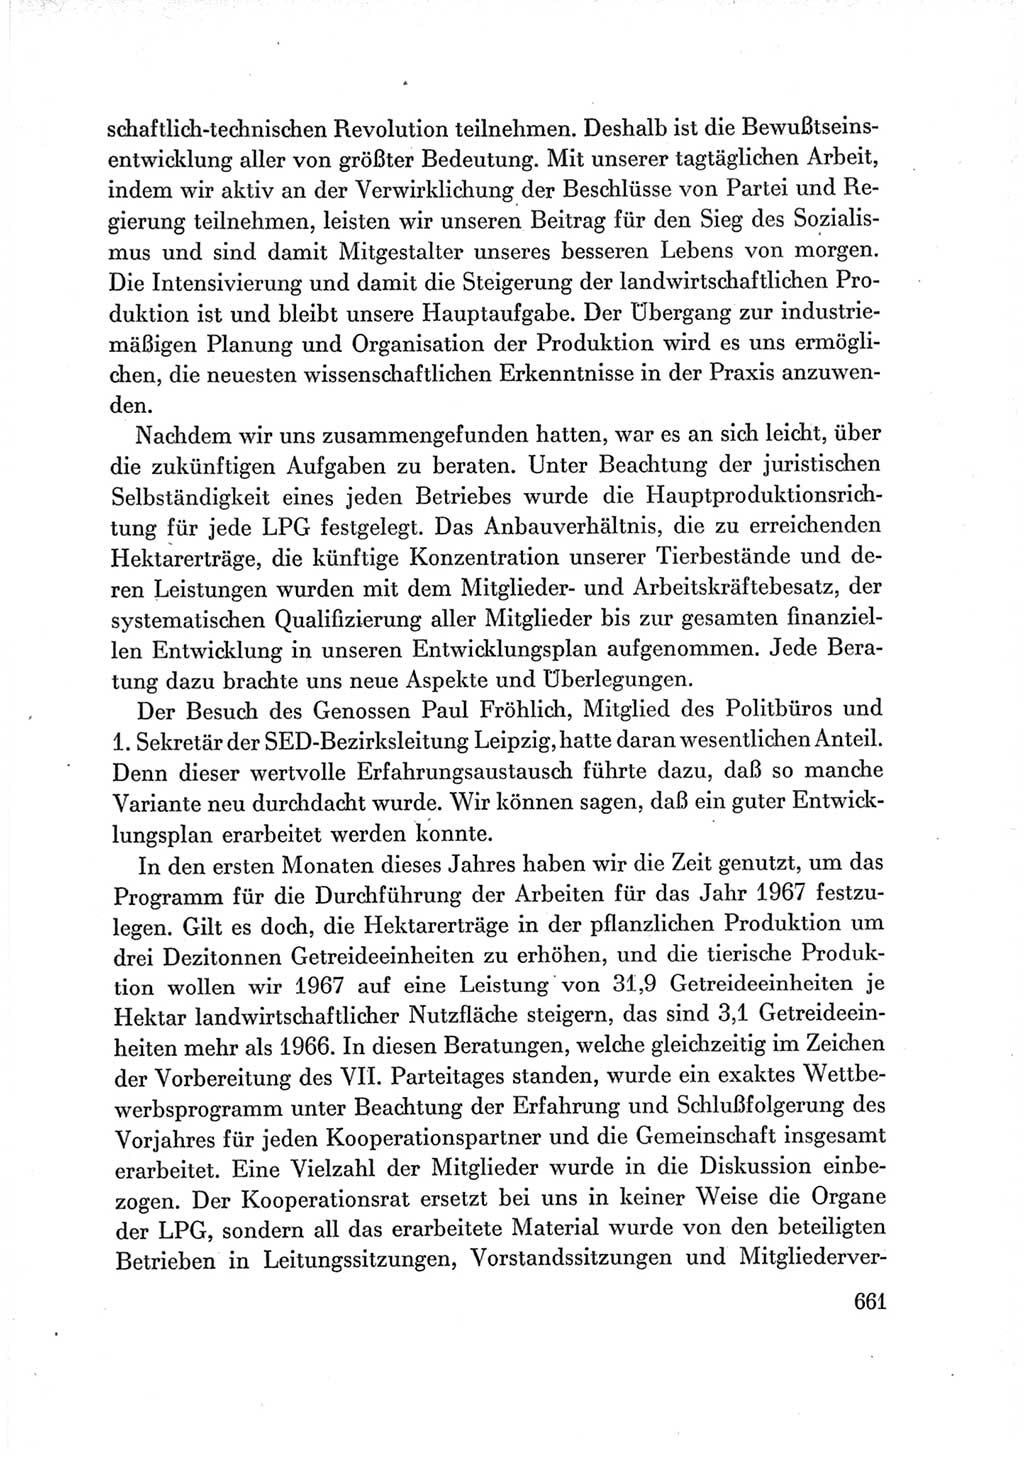 Protokoll der Verhandlungen des Ⅶ. Parteitages der Sozialistischen Einheitspartei Deutschlands (SED) [Deutsche Demokratische Republik (DDR)] 1967, Band Ⅲ, Seite 661 (Prot. Verh. Ⅶ. PT SED DDR 1967, Bd. Ⅲ, S. 661)